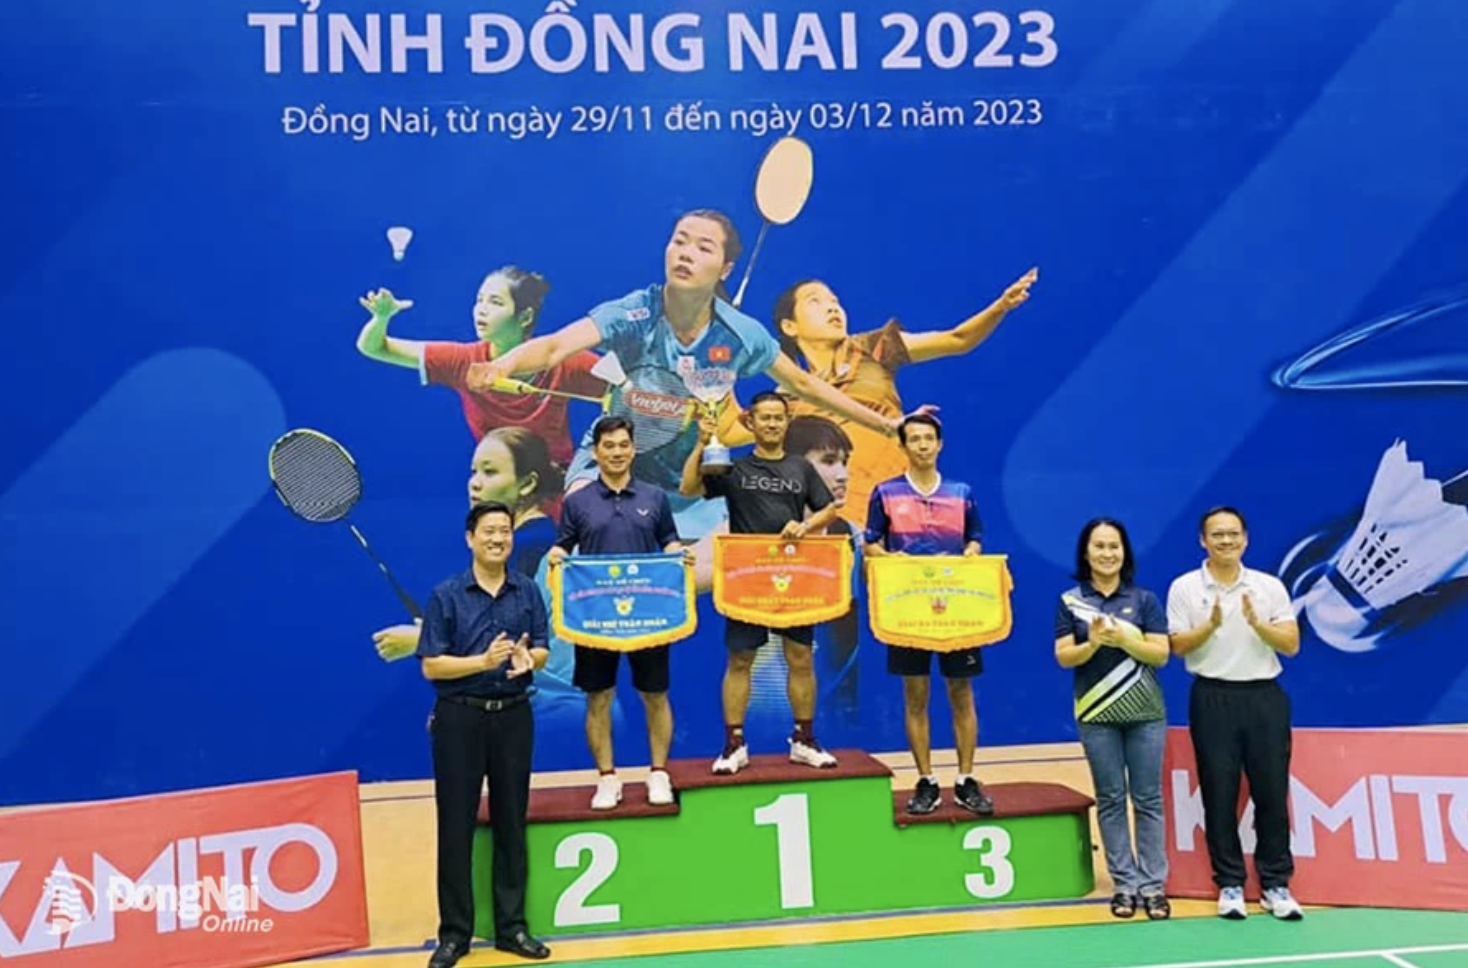 Long Khánh dẫn đầu Giải cầu lông các CLB tỉnh Đồng Nai năm 2023